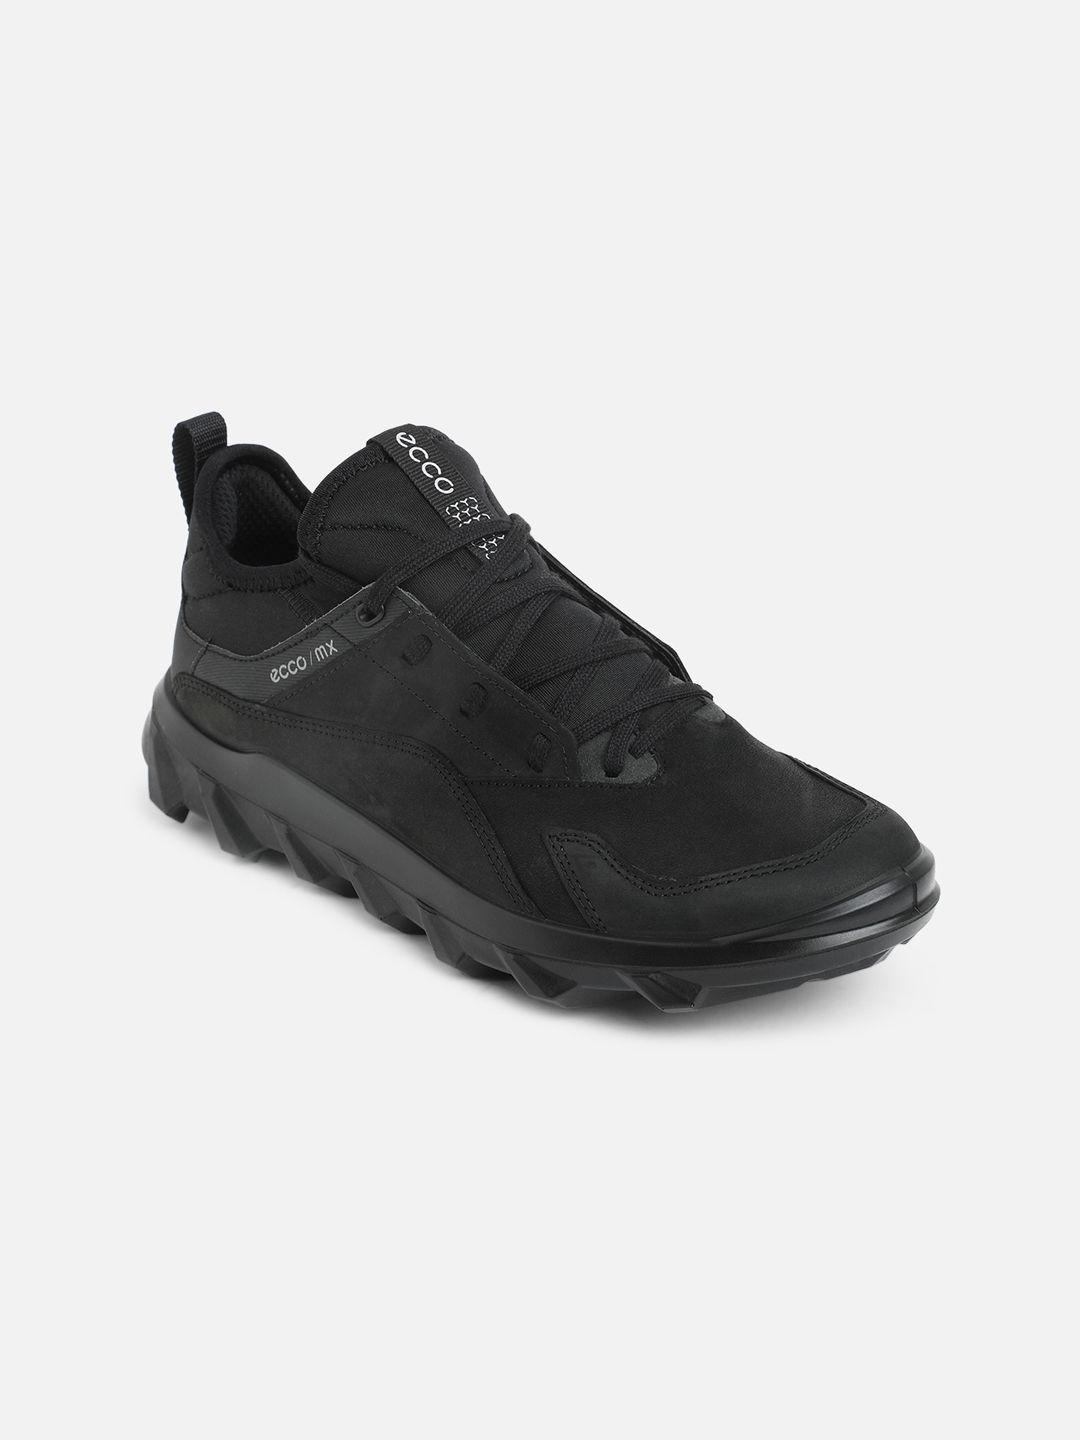 ecco-women-black-outdoor-leather-trekking-shoes